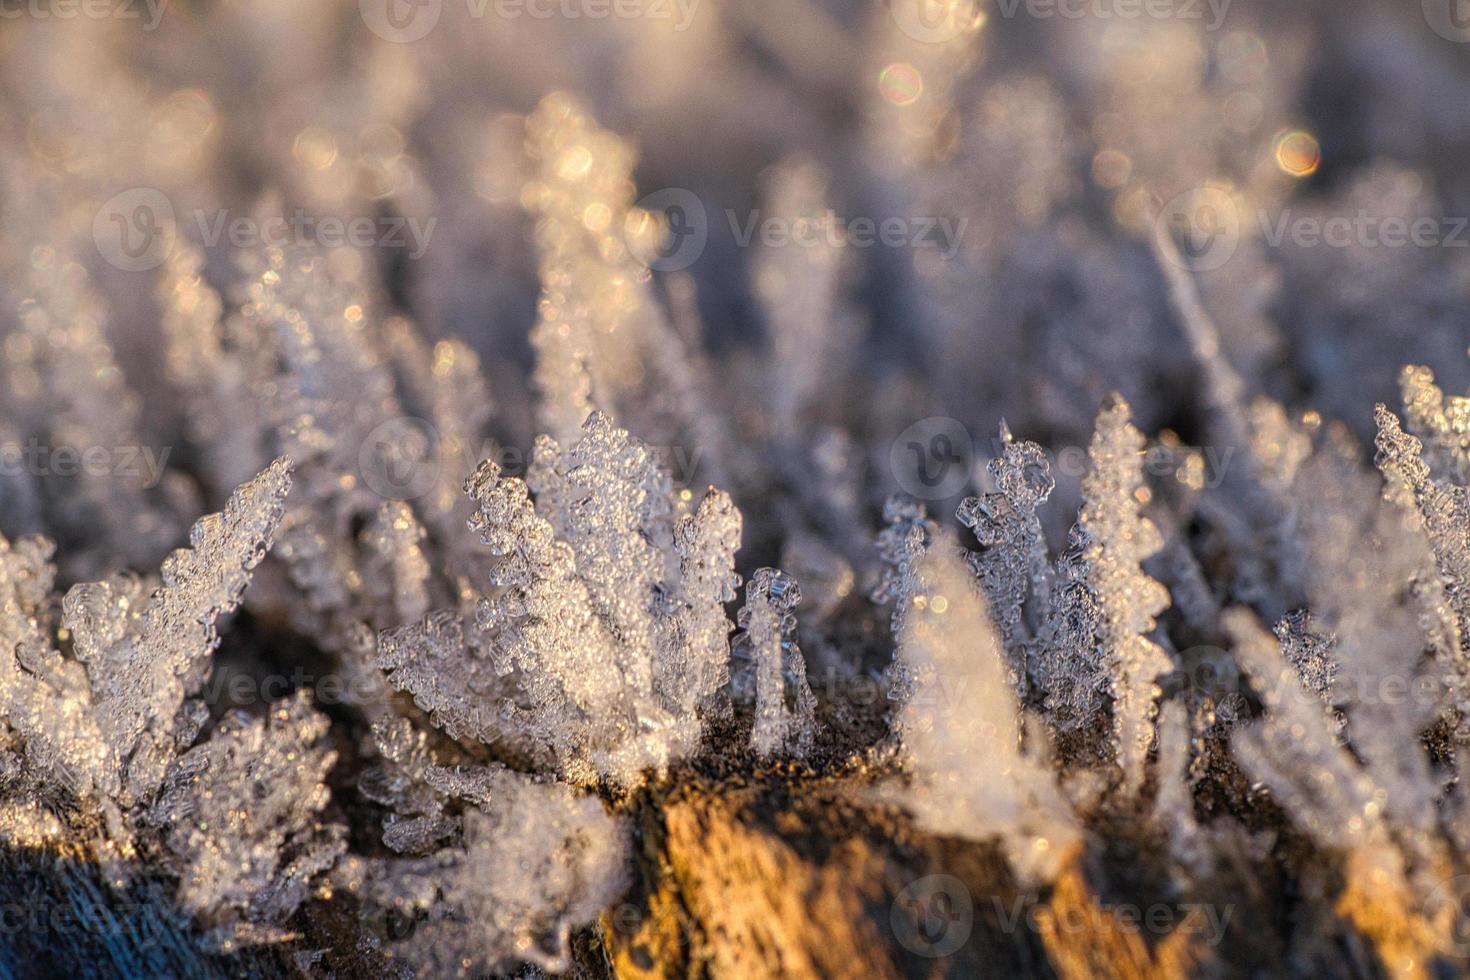 cristales de hielo que se han formado en el tronco de un árbol y han crecido en altura. foto